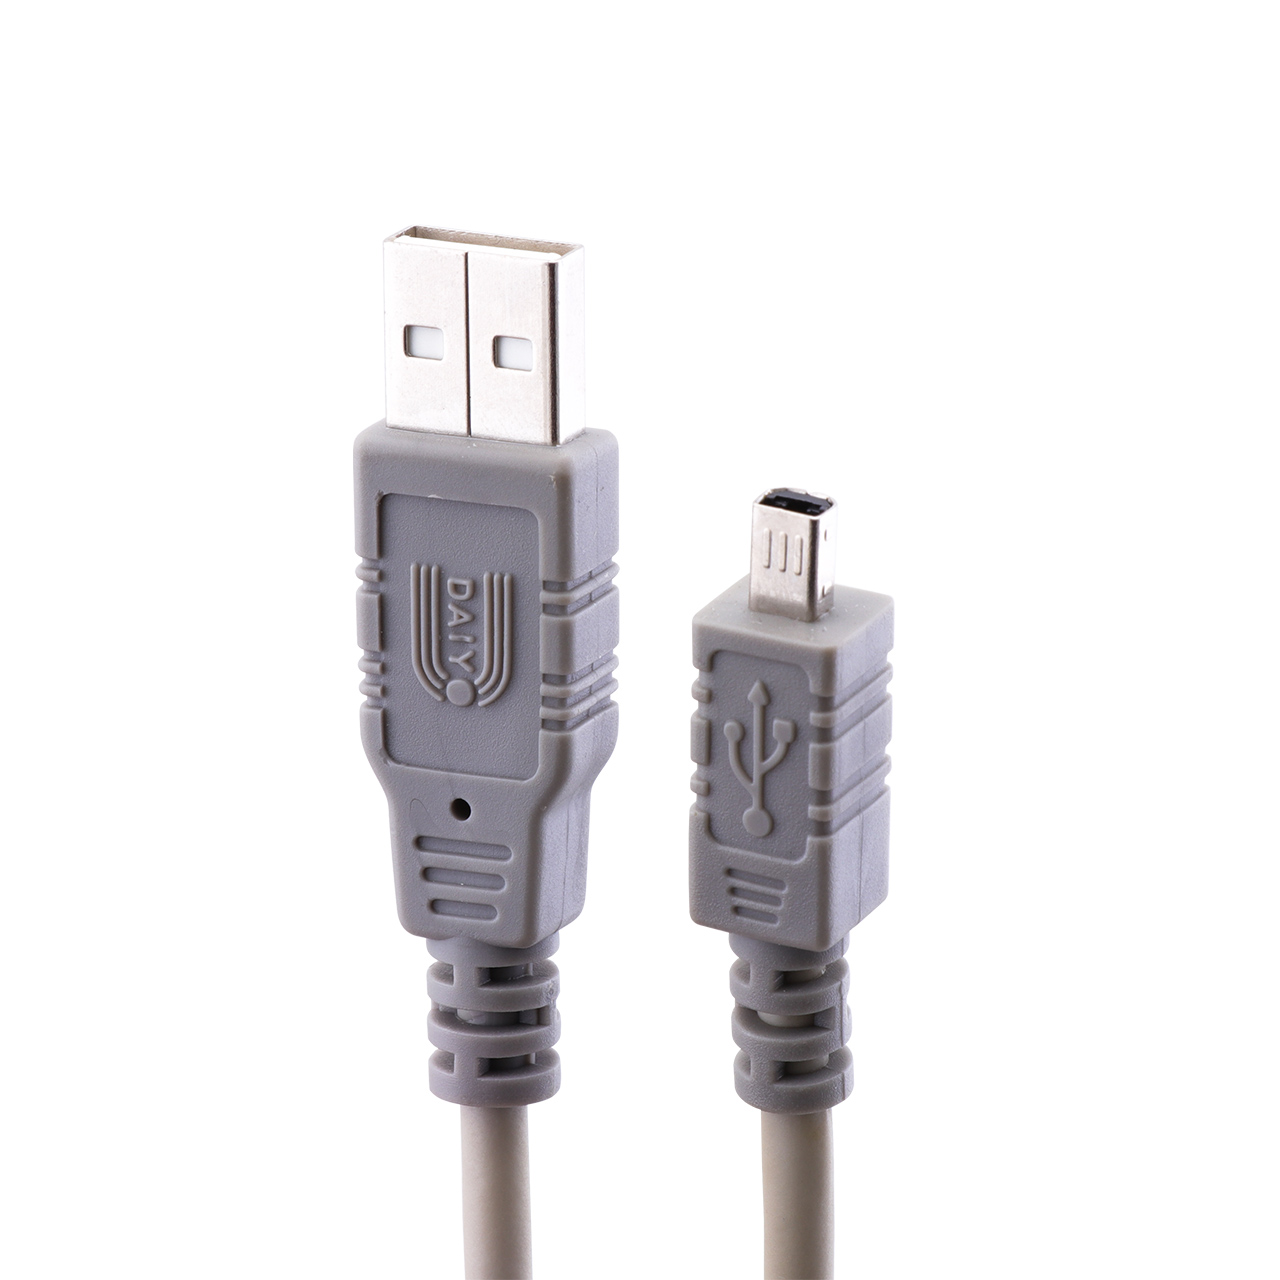 کابل تبدیل USB به Mini USB دایو مدل CP2504 به طول 1.8 متر